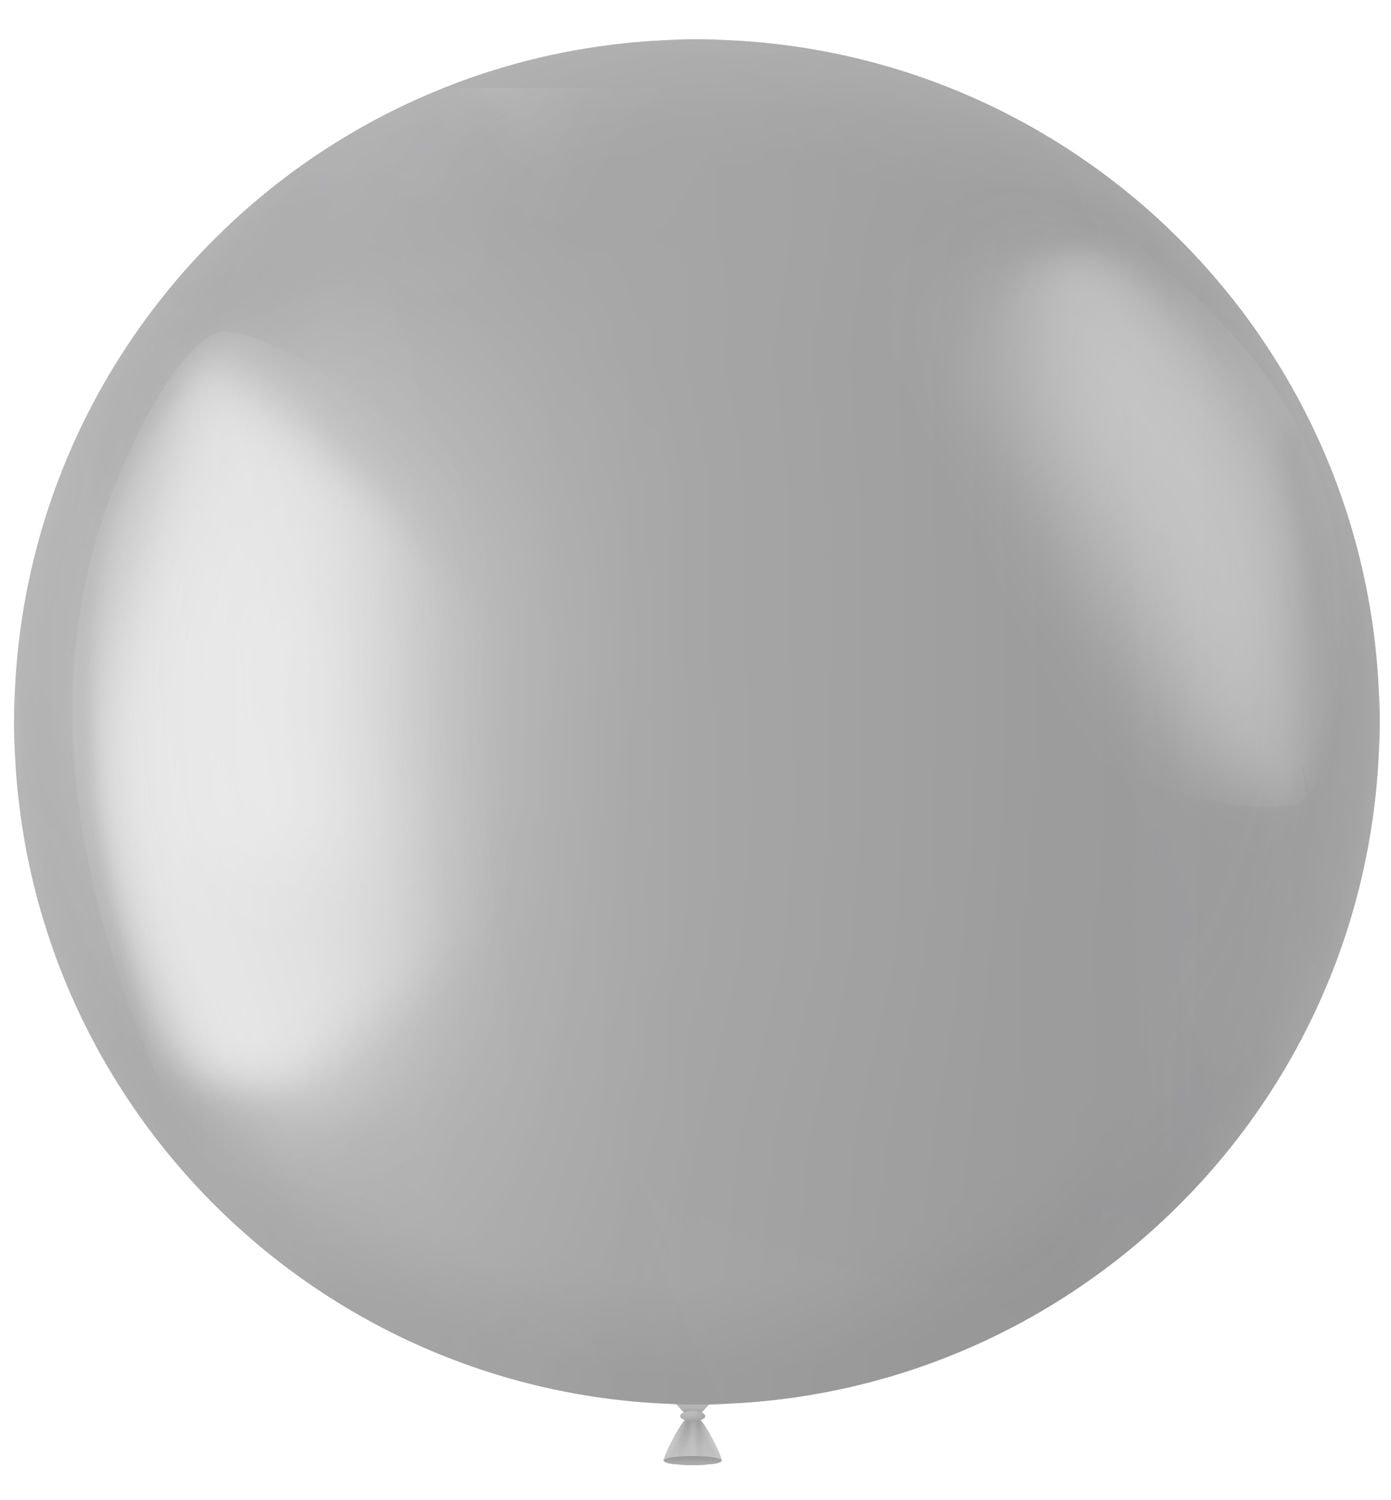 XL ballon zilver metallic